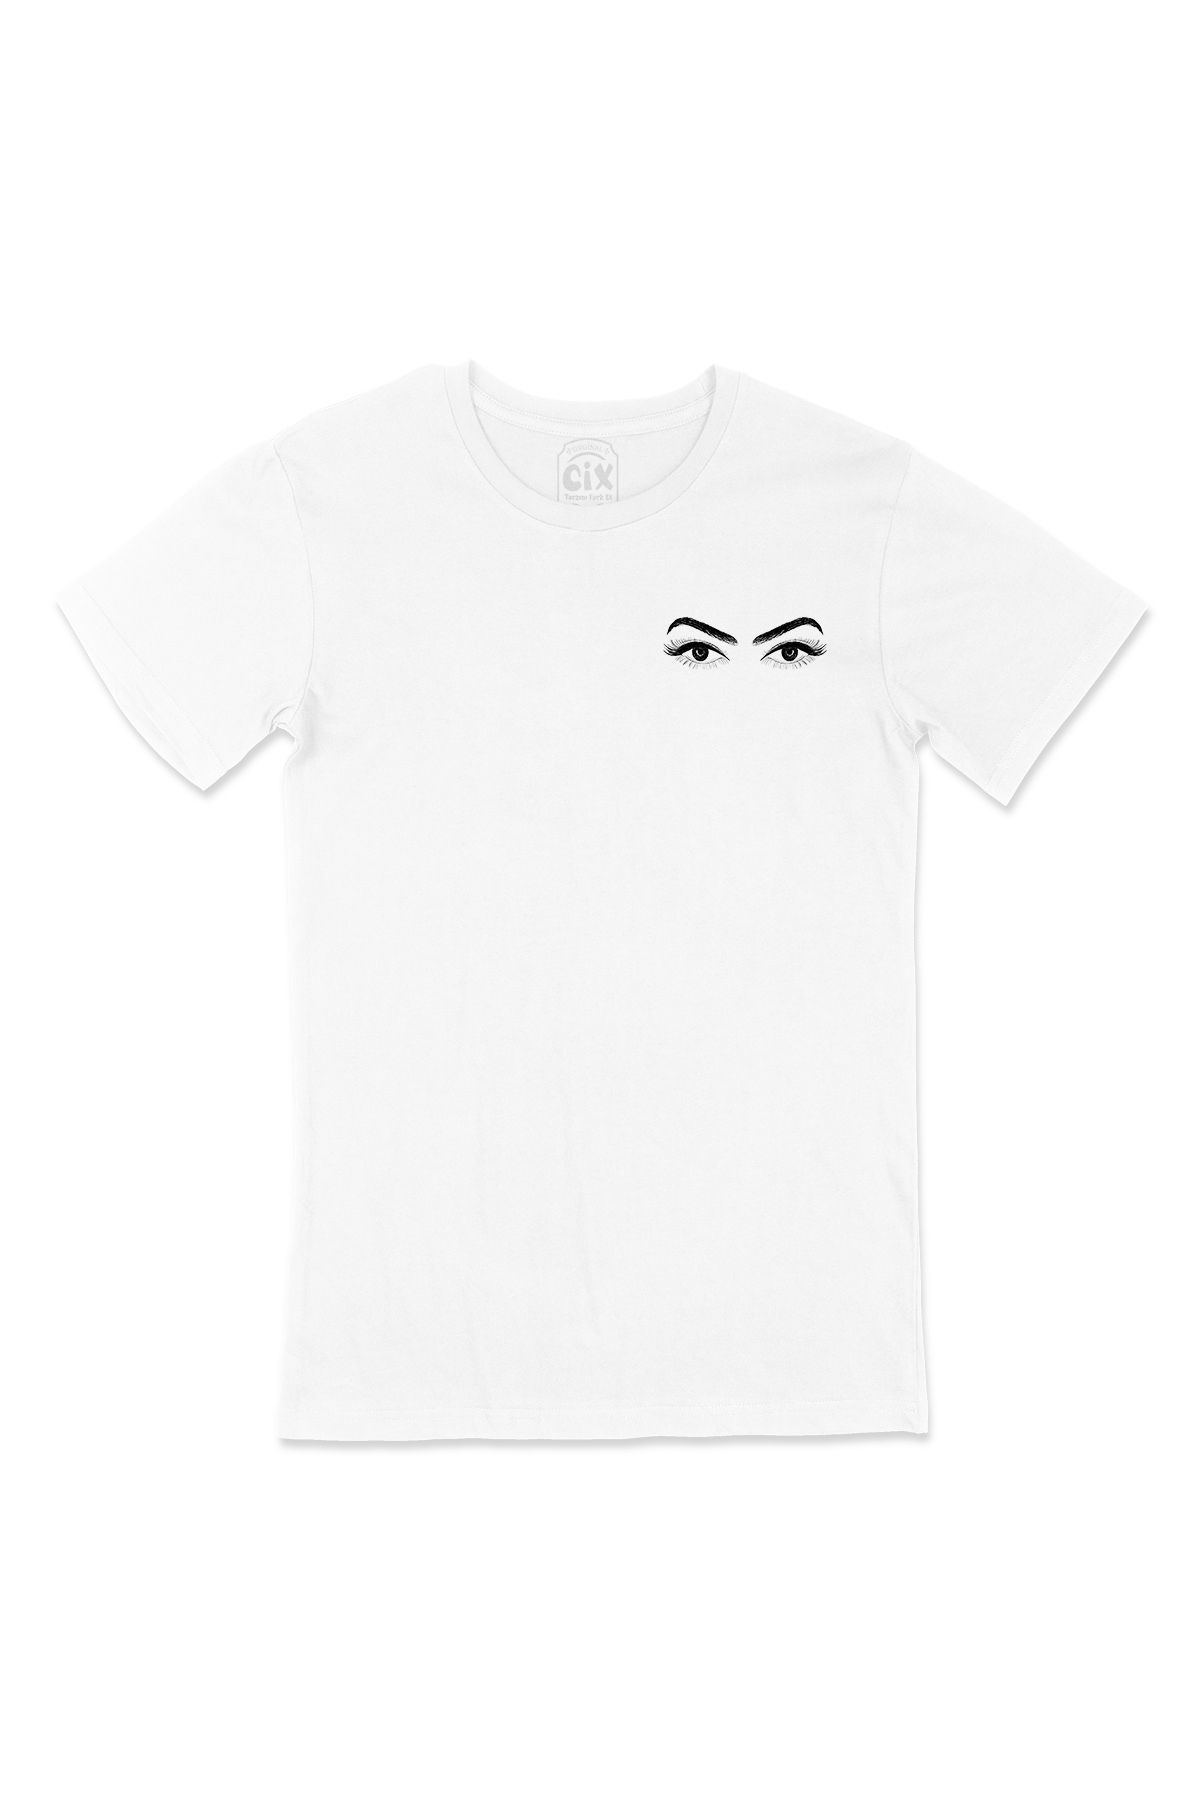 Cix Kara Kalem Göz Tasarımlı Cep Logo Tasarımlı Beyaz Tişört